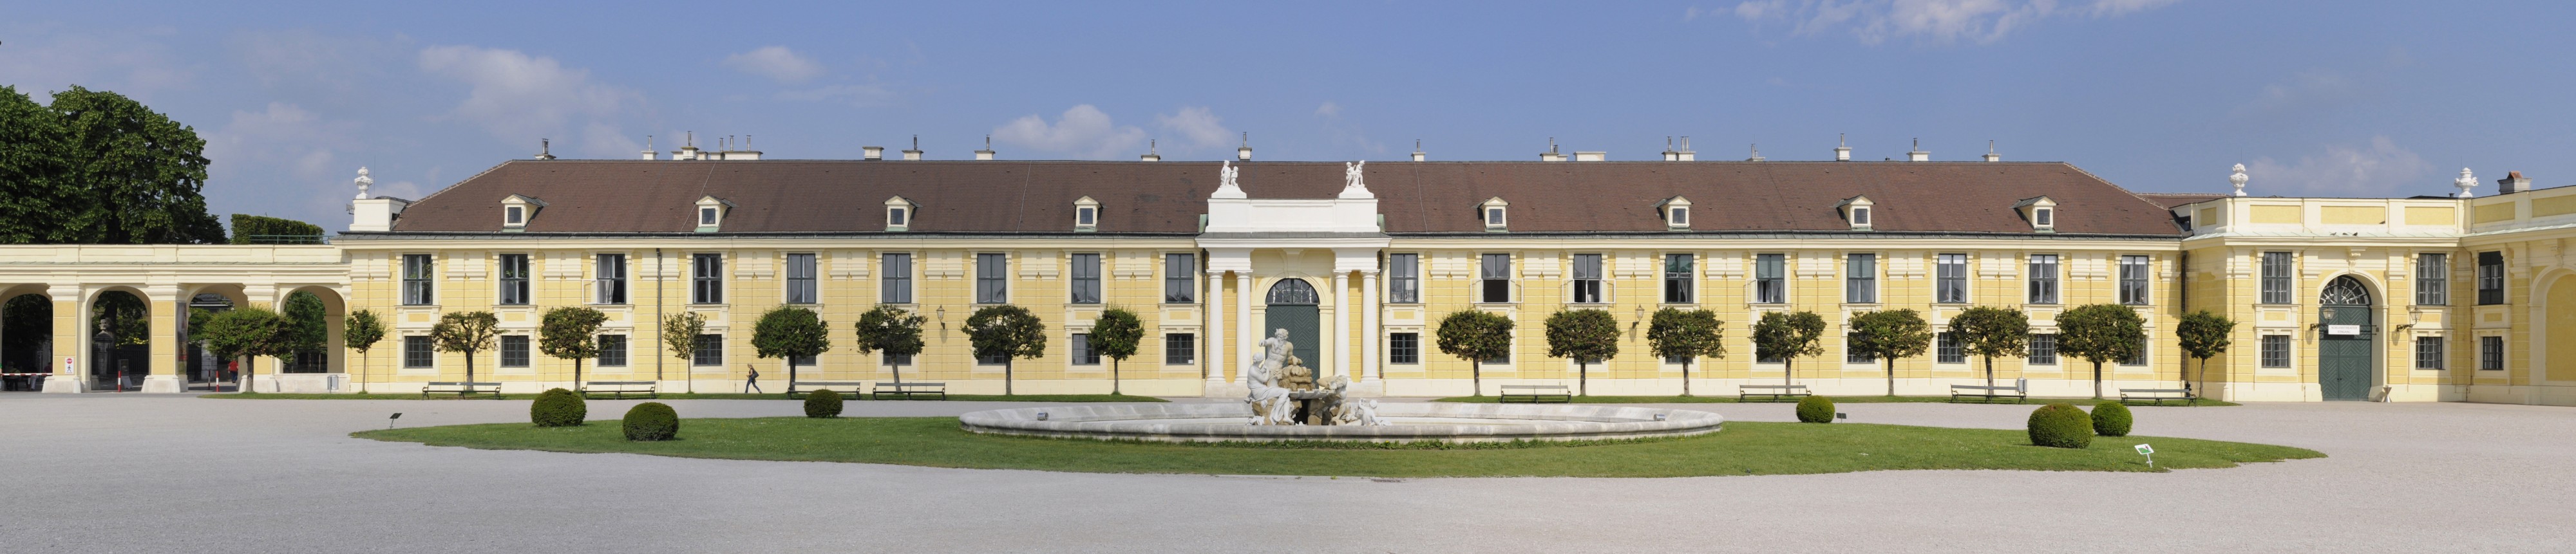 Schonbrunn Palace - Vienna